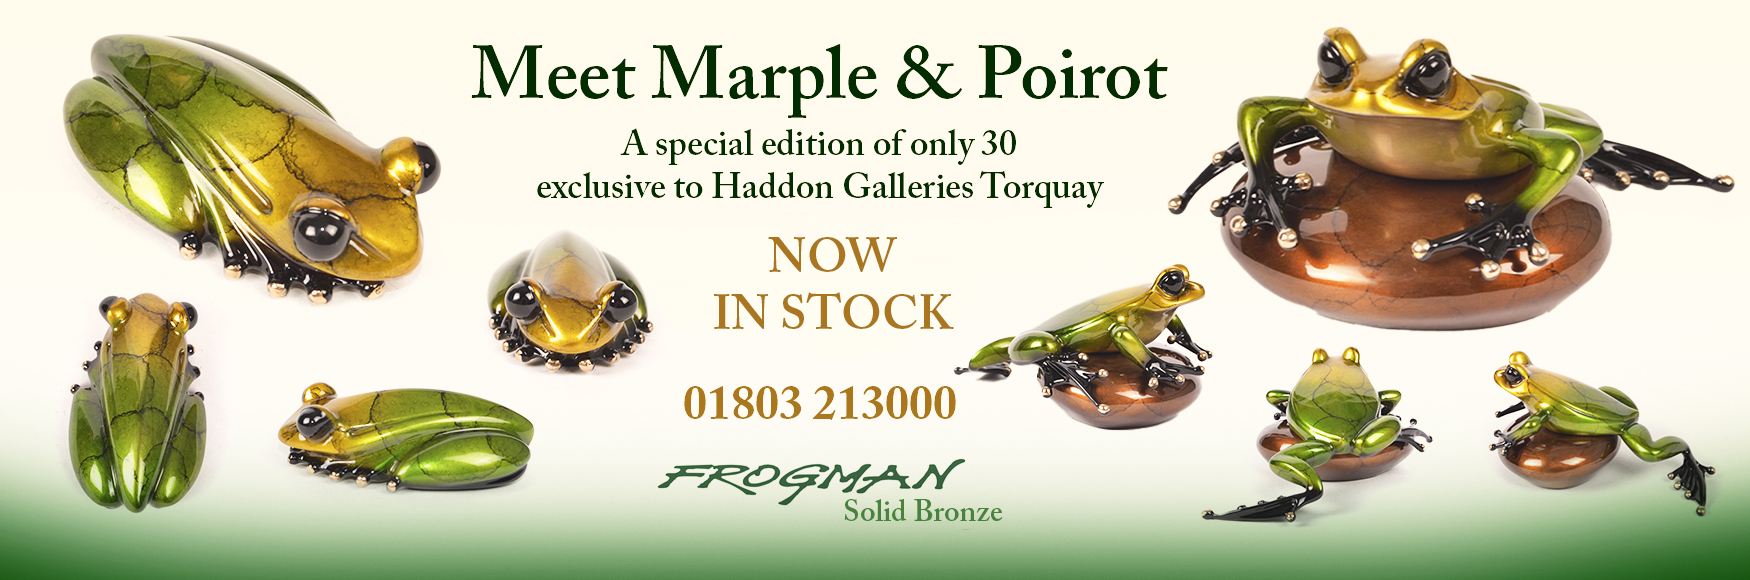 Frogman Bronze Marple & Poirot